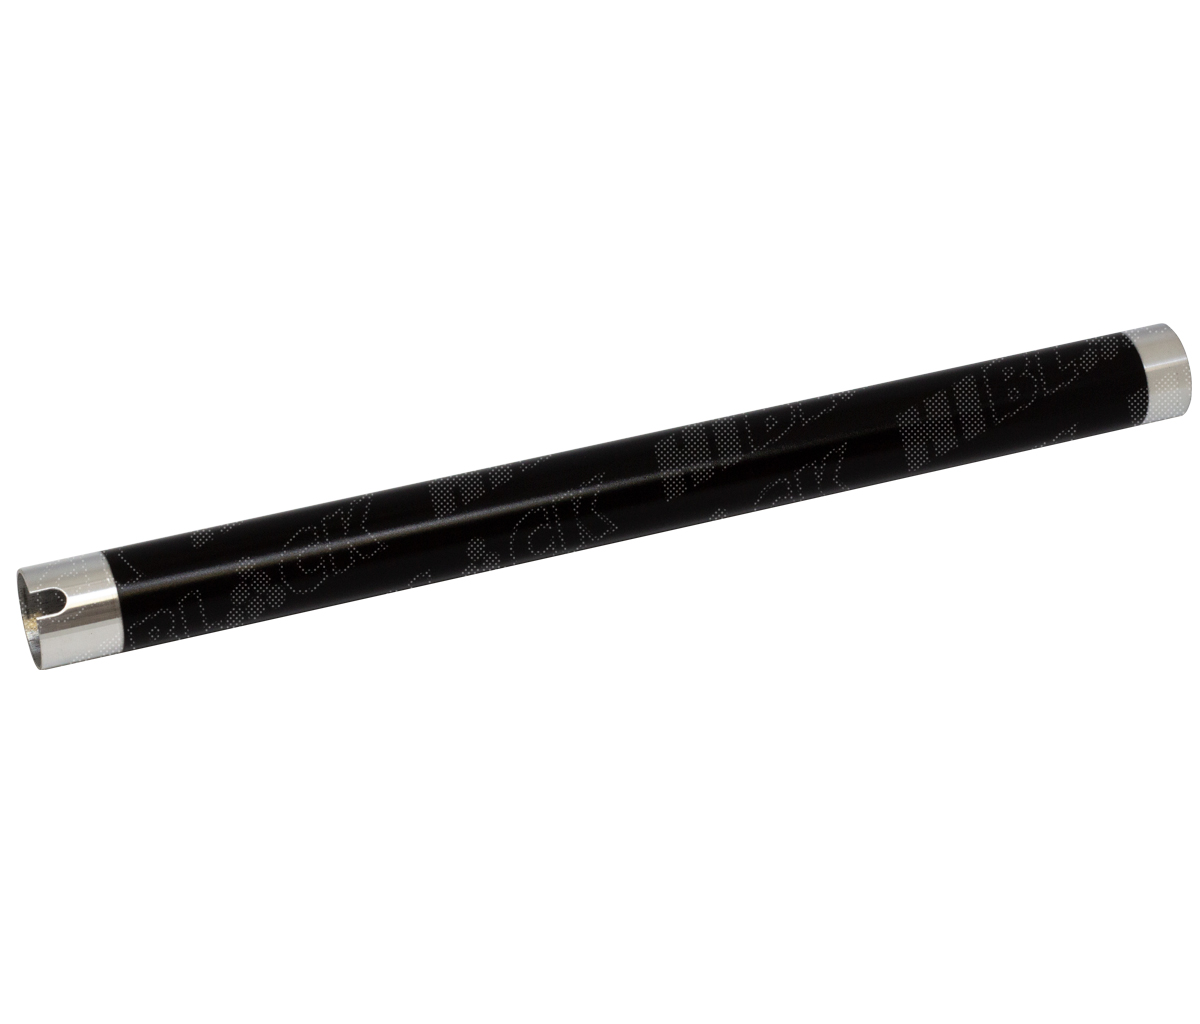 Вал тефлоновый верхний Hi-Black для Samsung ML-1510 / 1610 / 1710 / SCX-4016 / Xerox Ph 3117